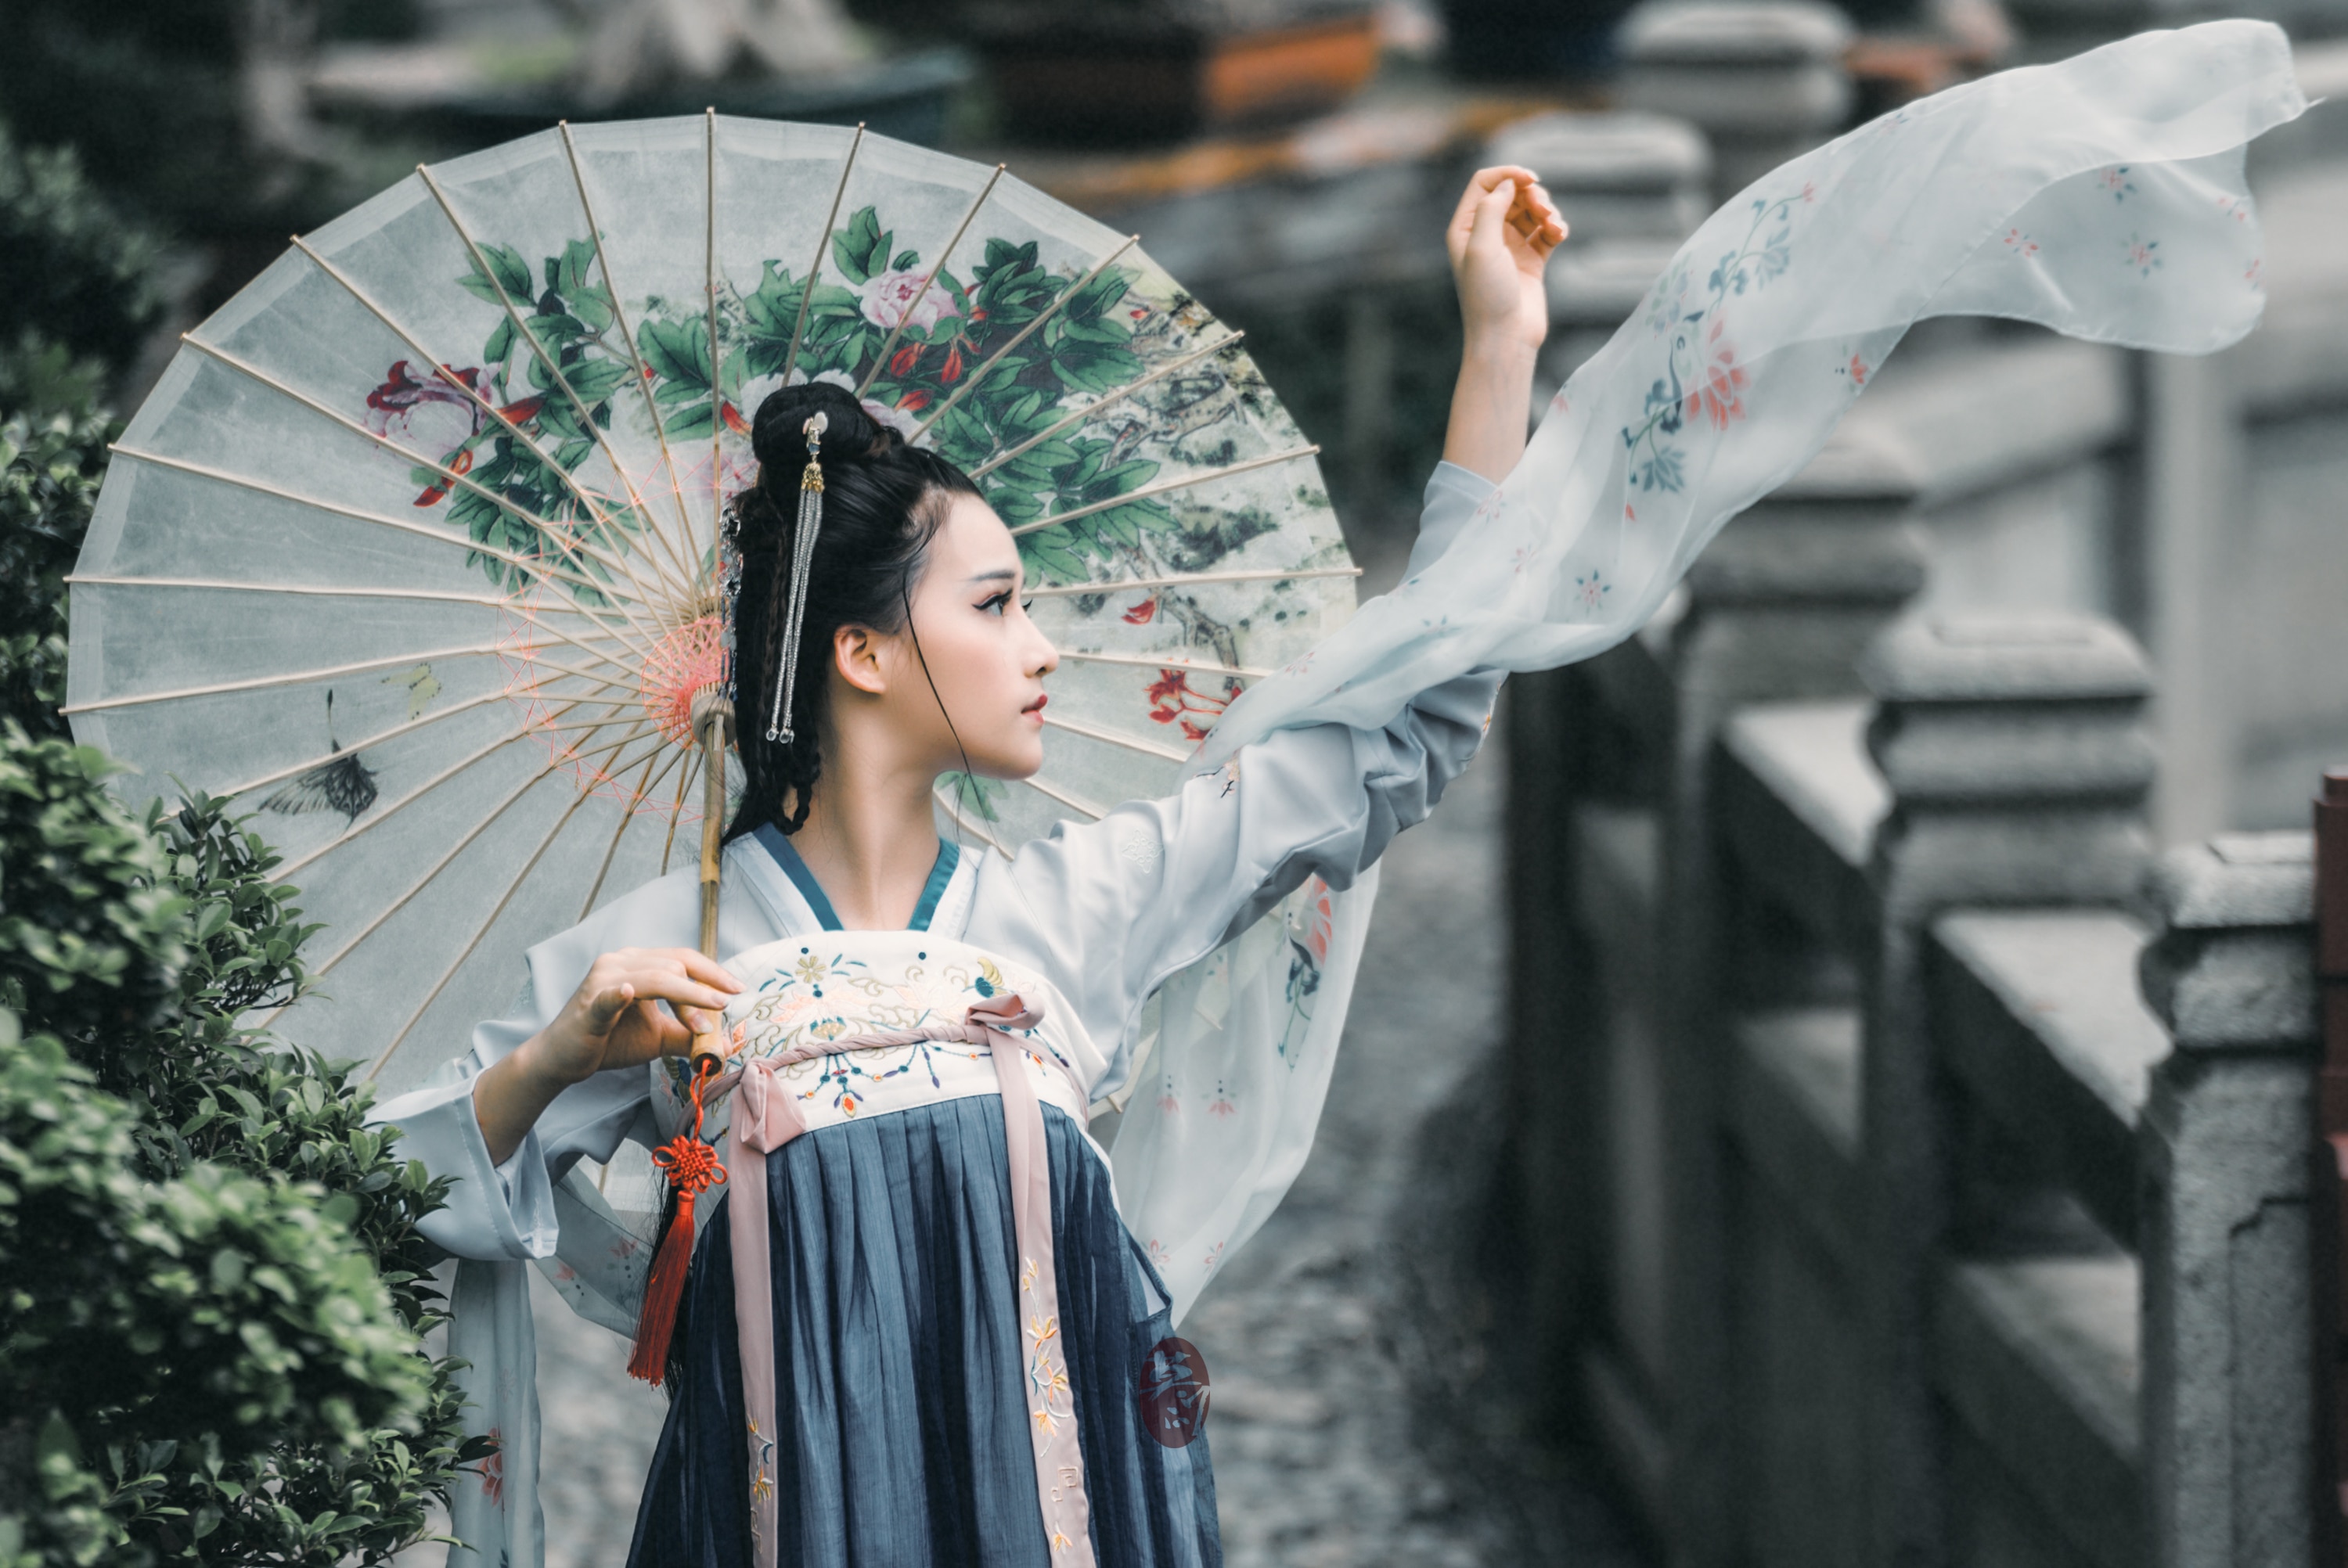 китайский народный костюм фотографии